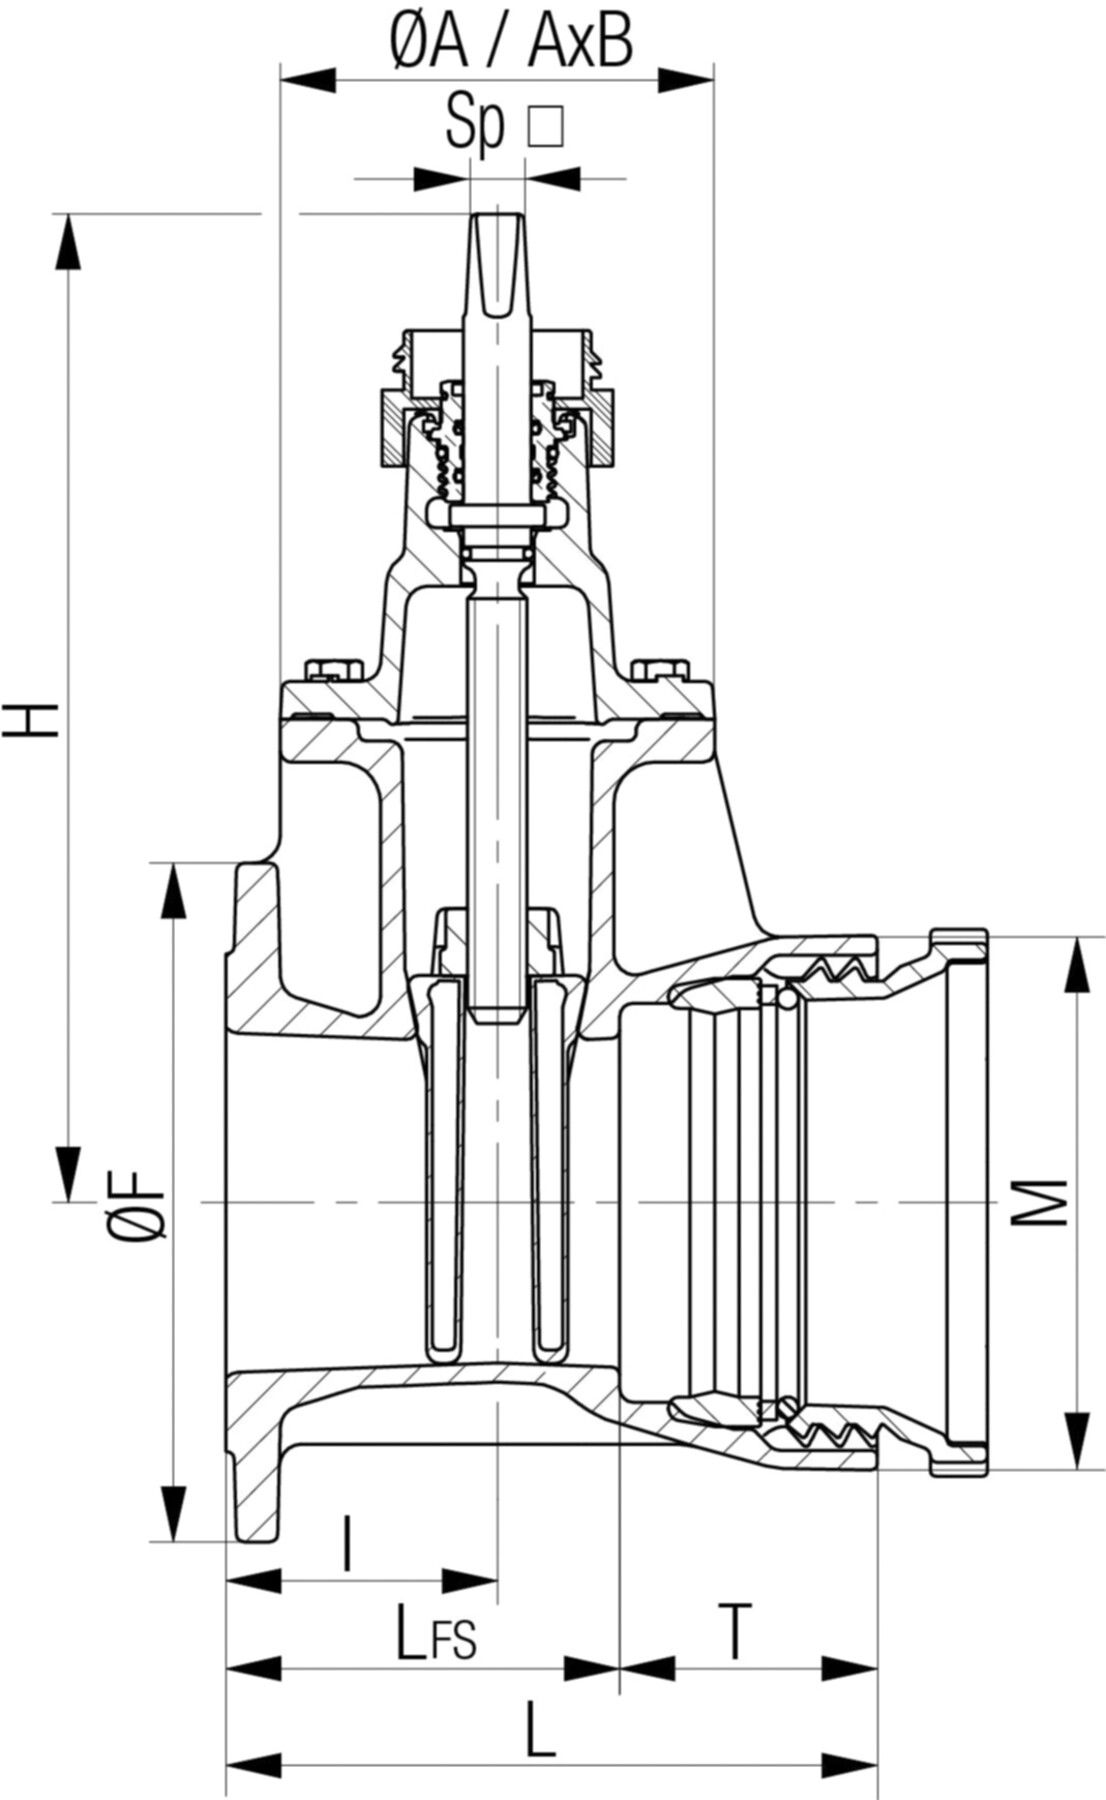 Flansch-/Schraubmuffenschieber Fig. 5420 DN 50/40 PN 10/16 - Von Roll Armaturen